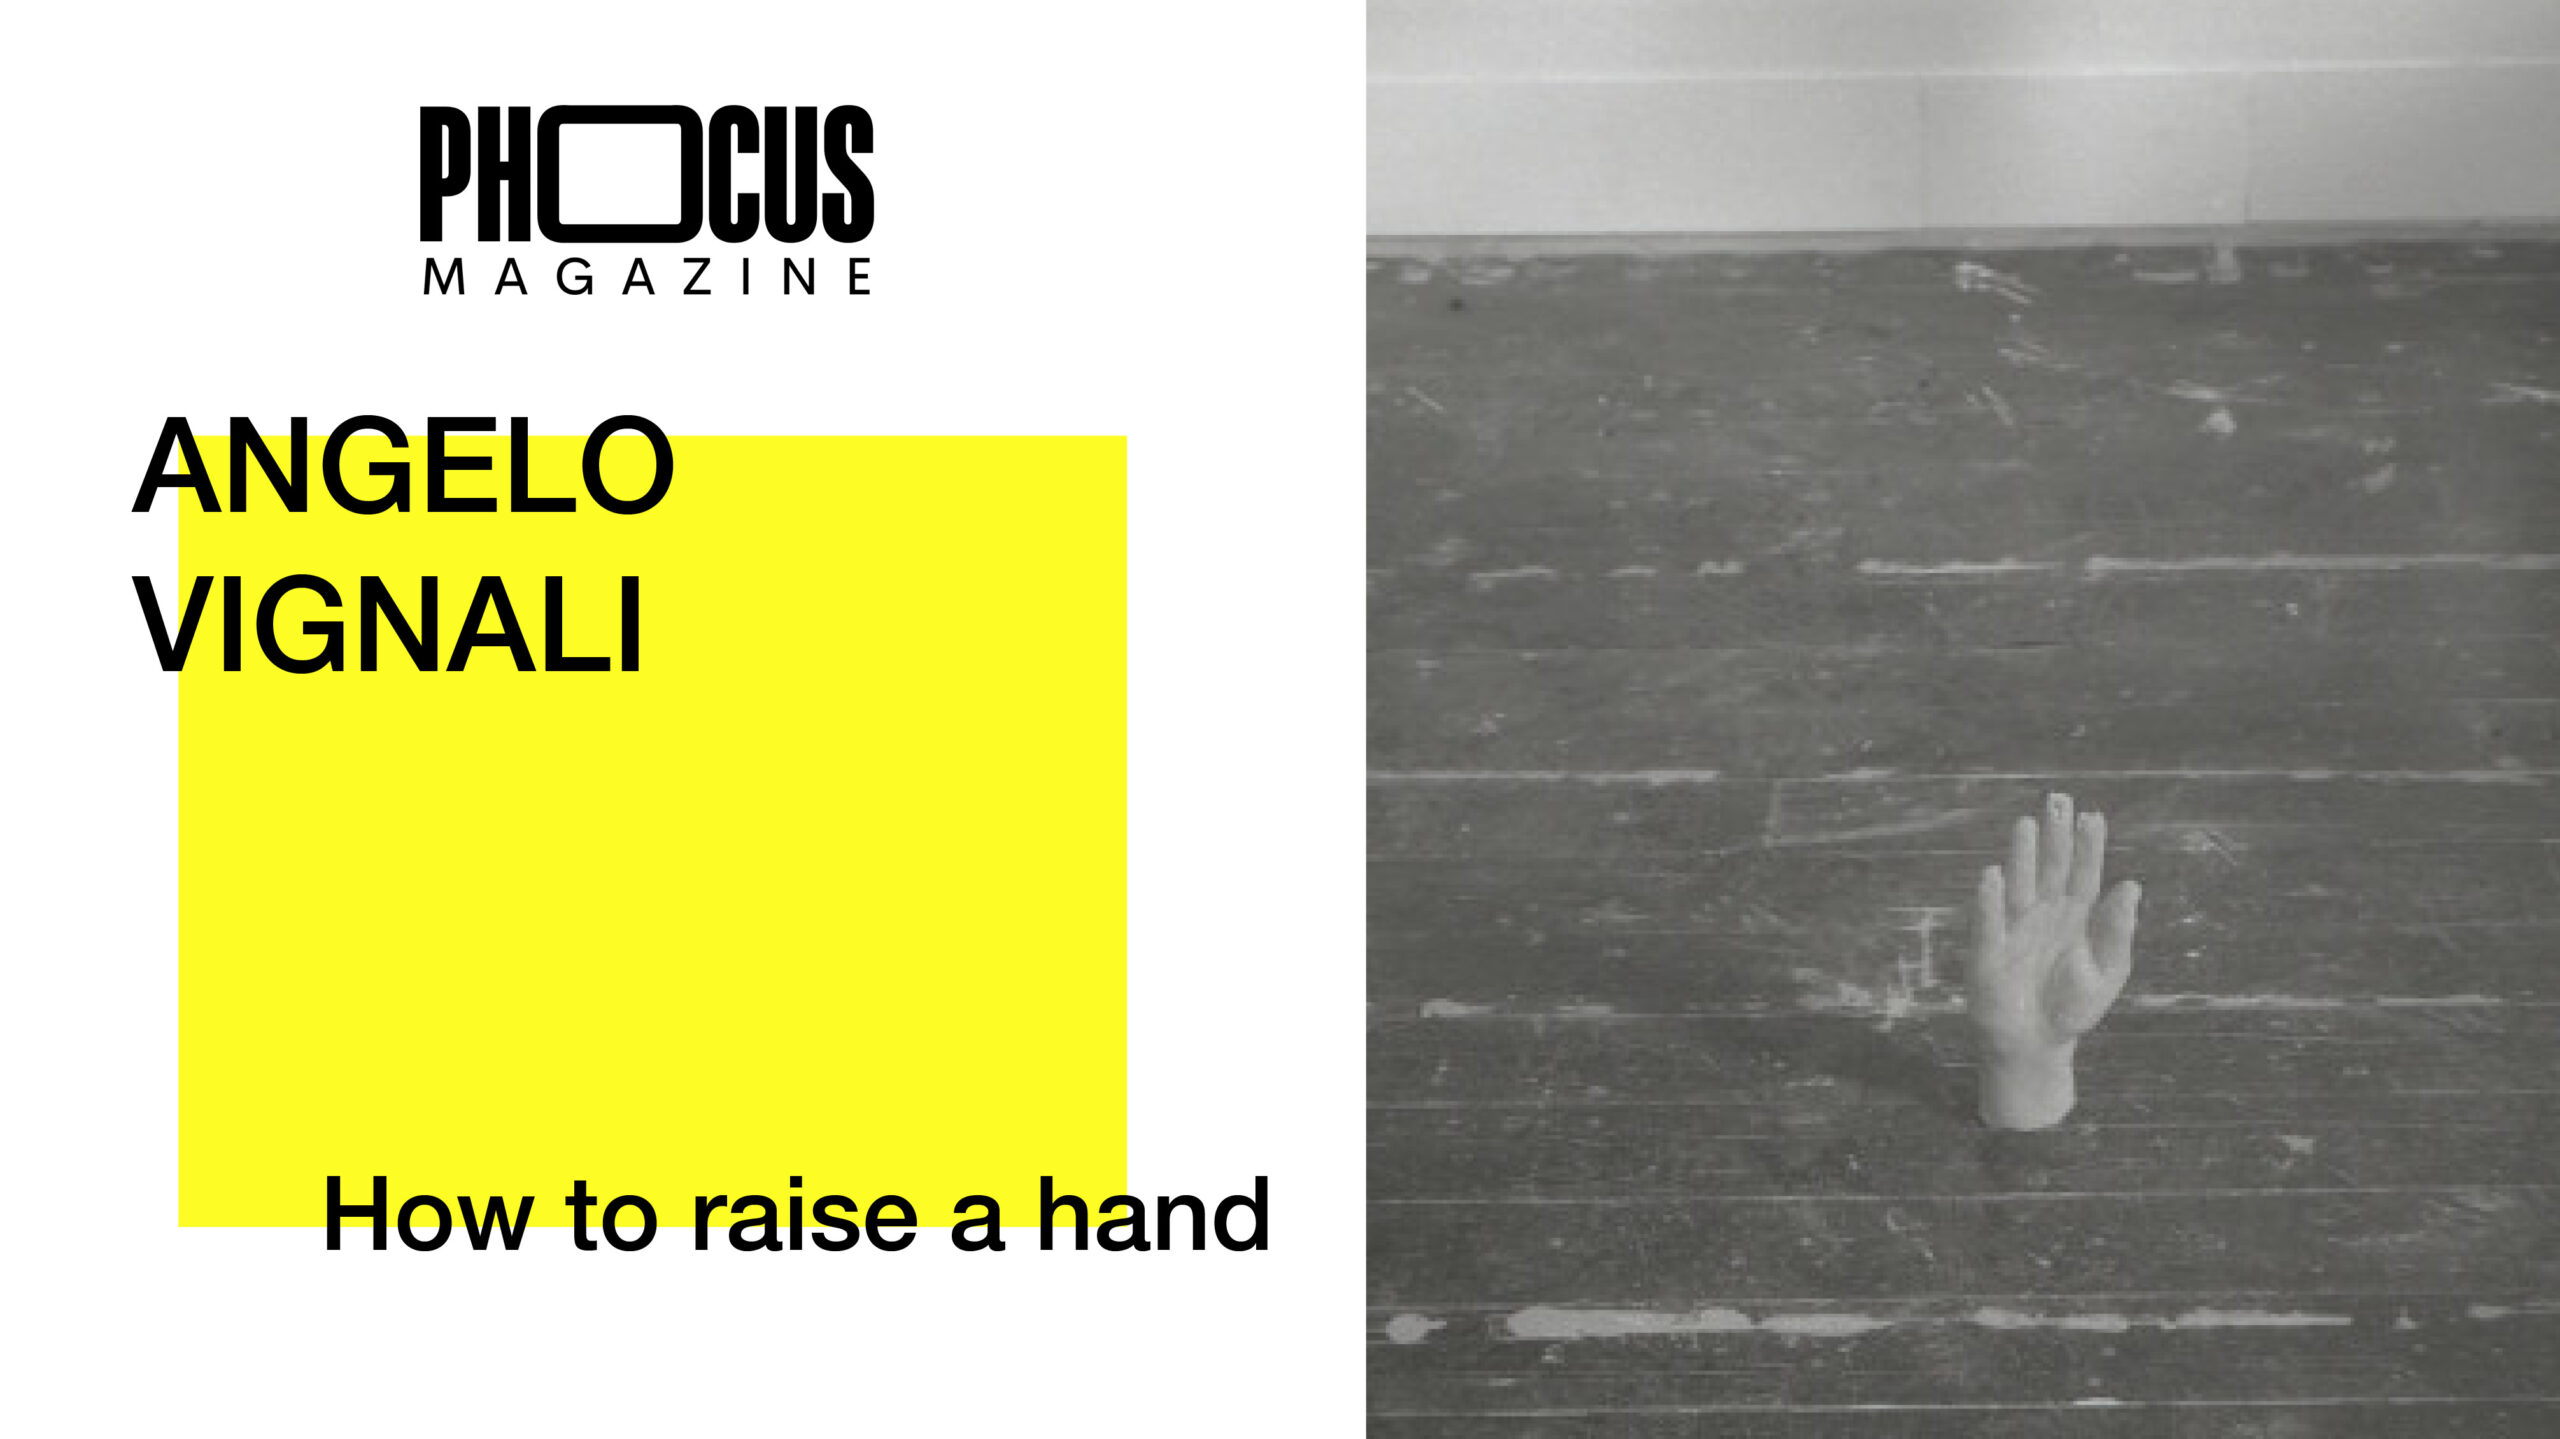 Angelo Vignali ospite di PHocus Magazine il 14 giugno alle ore 21:00 per la rubrica "Prima leggiamo, poi parliamo" a cura di Massimo Mastrorillo